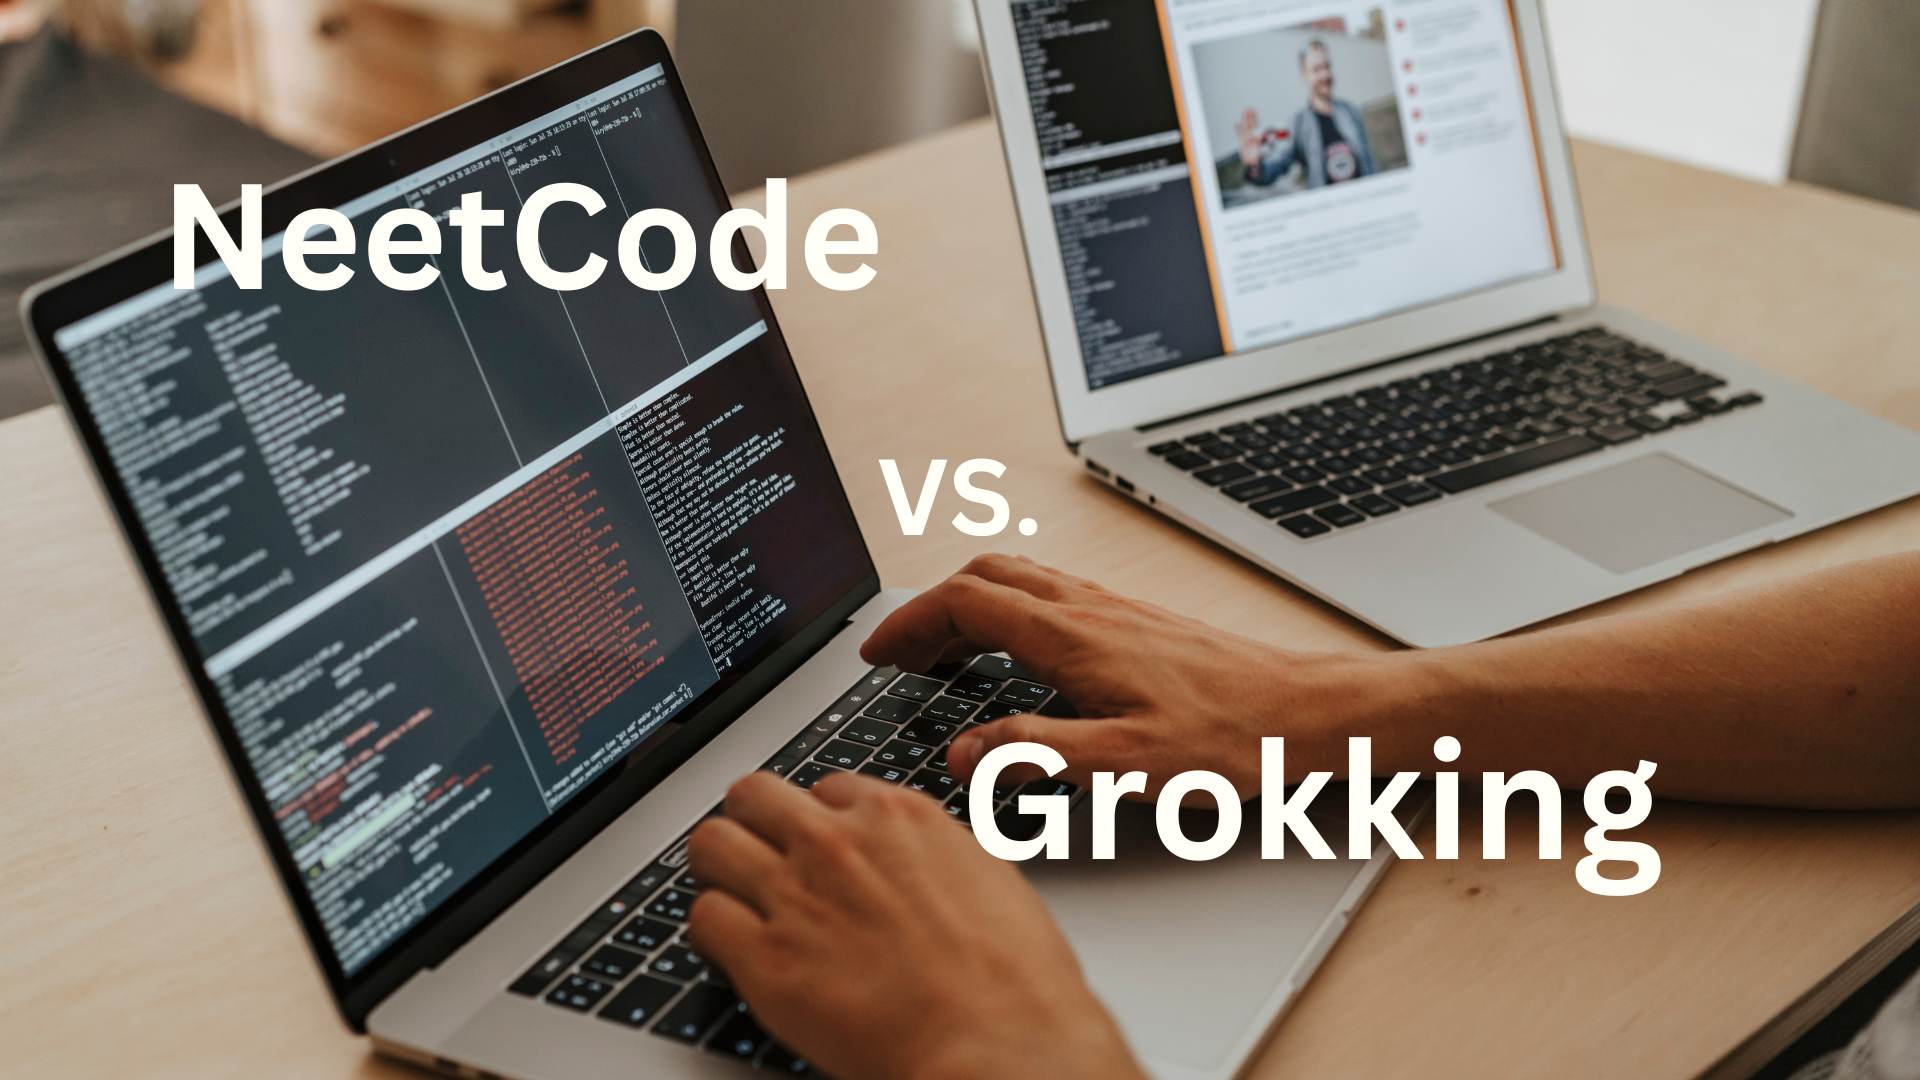 NeetCode vs Grokking